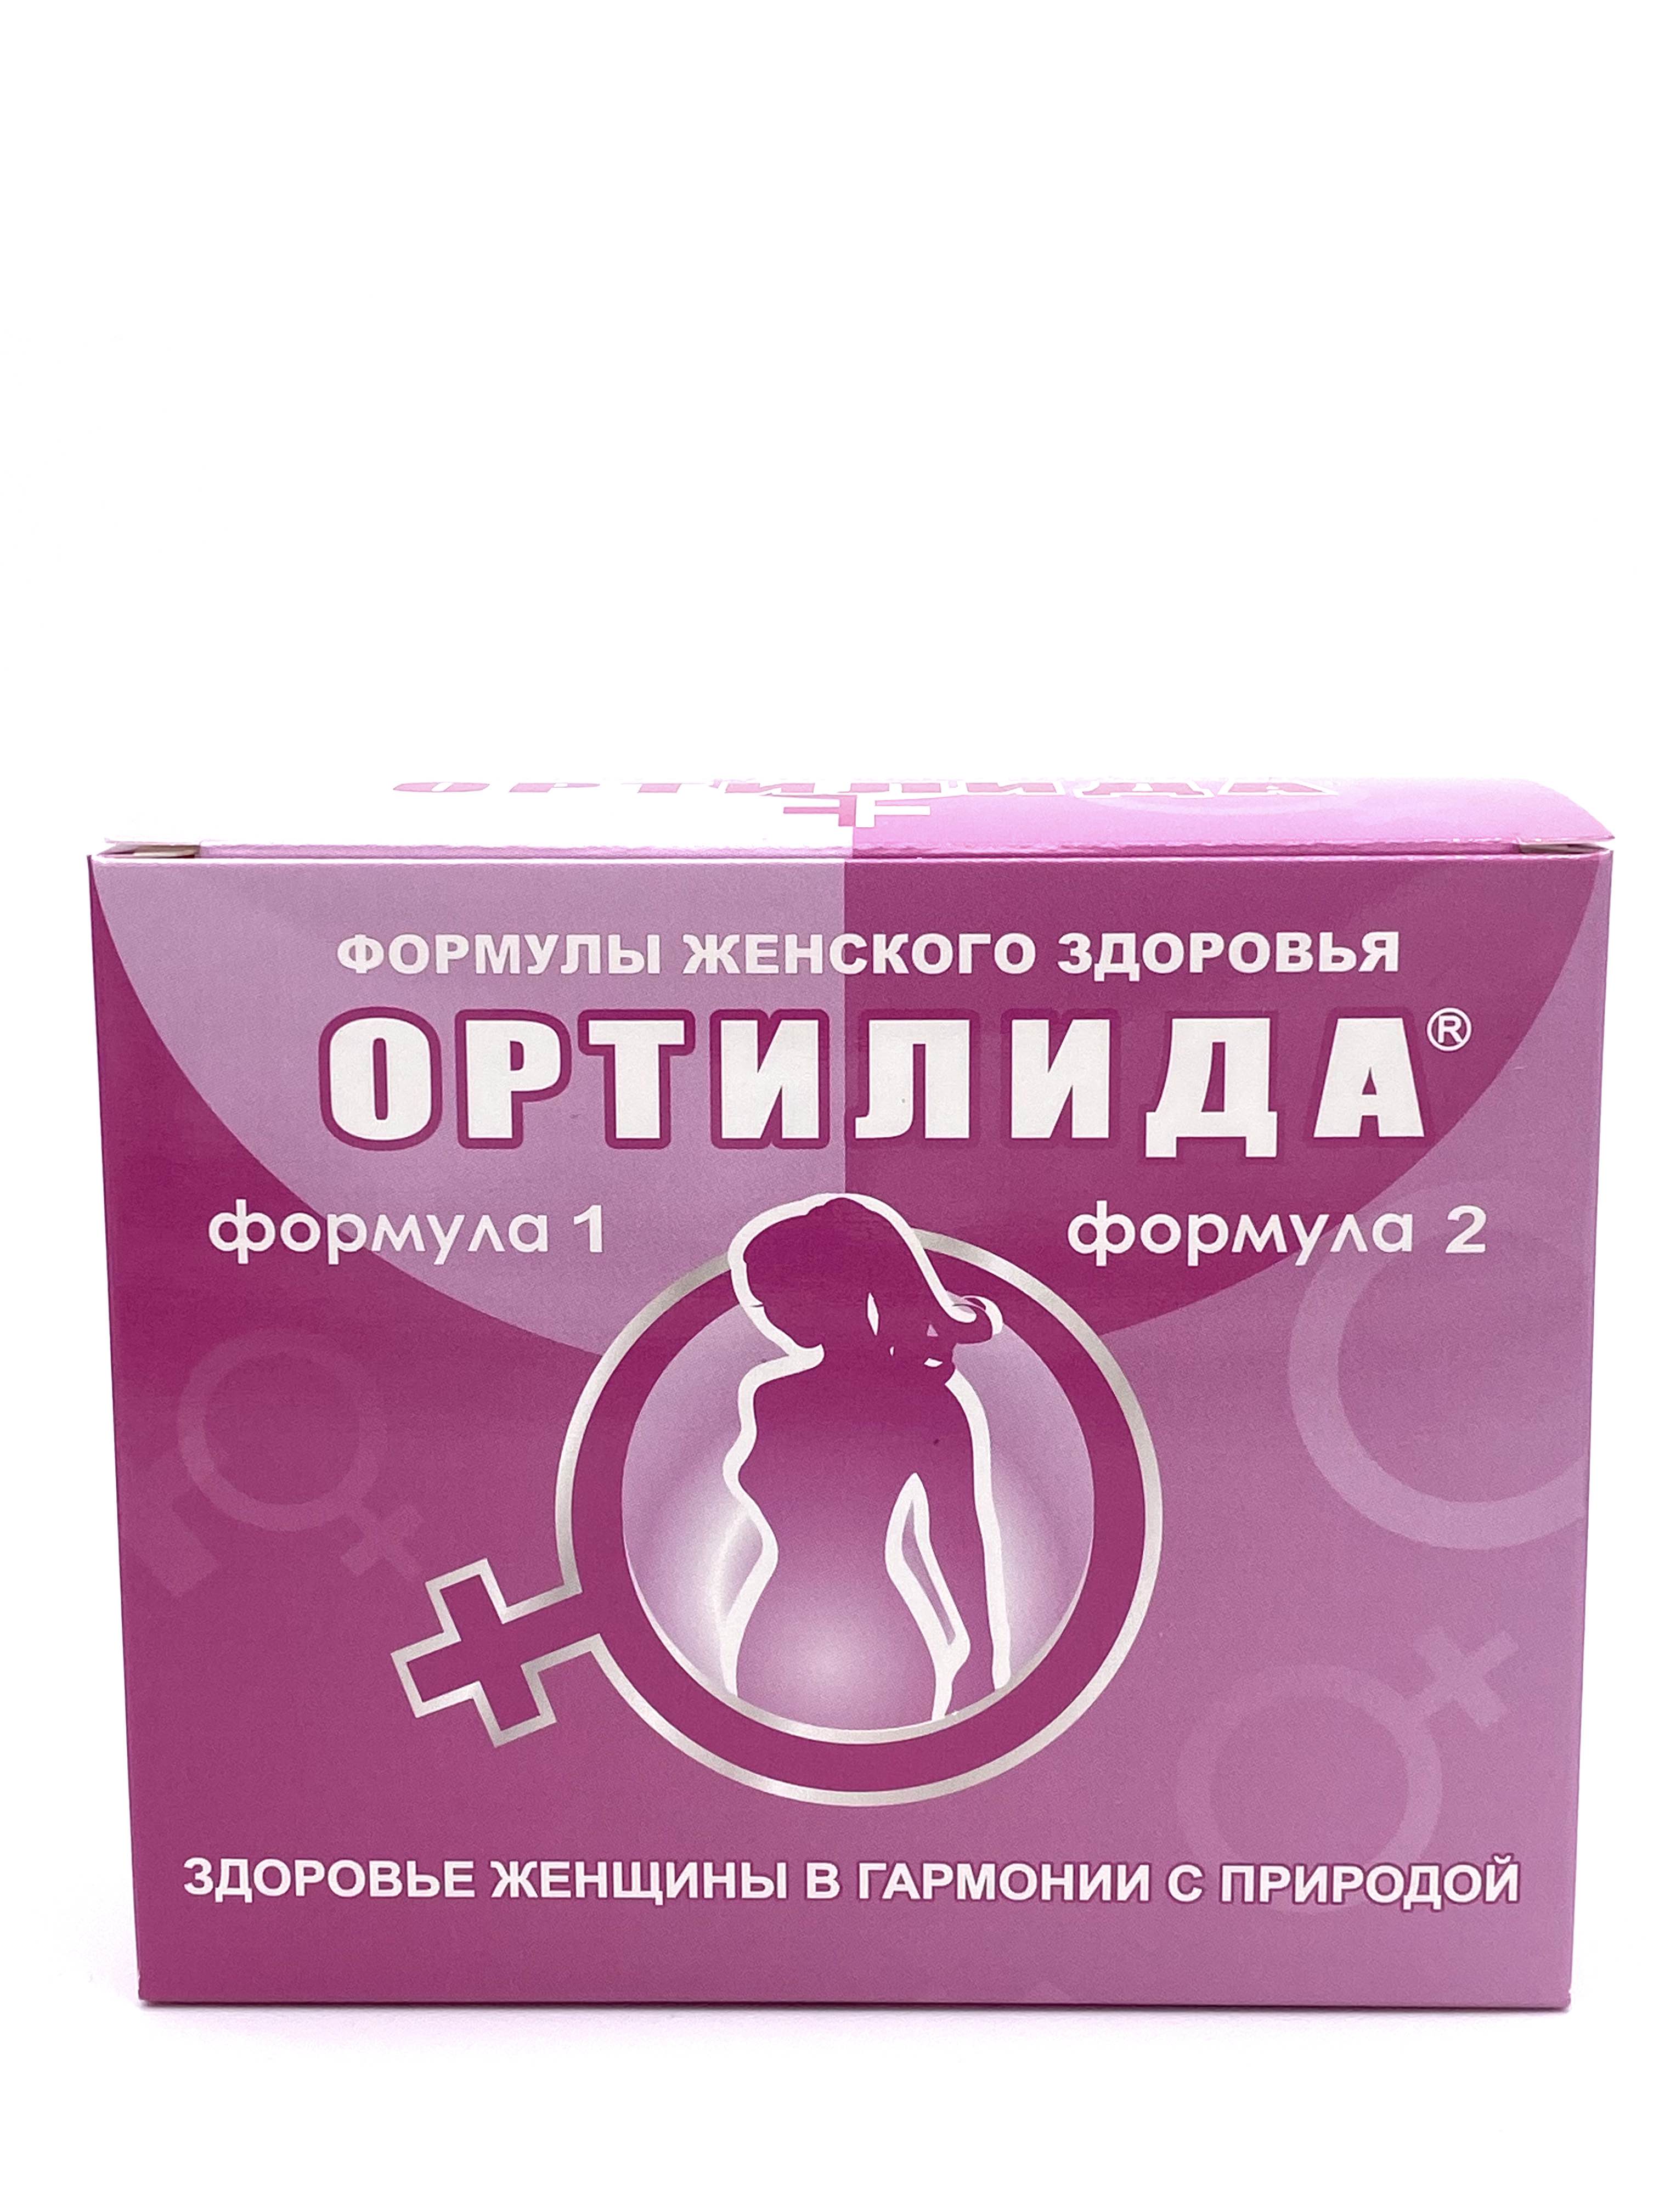 Фитокомплекс Целебный дар Алтая ОРТИЛИДА женское здоровье 1 формула 2 табл. 120 шт.